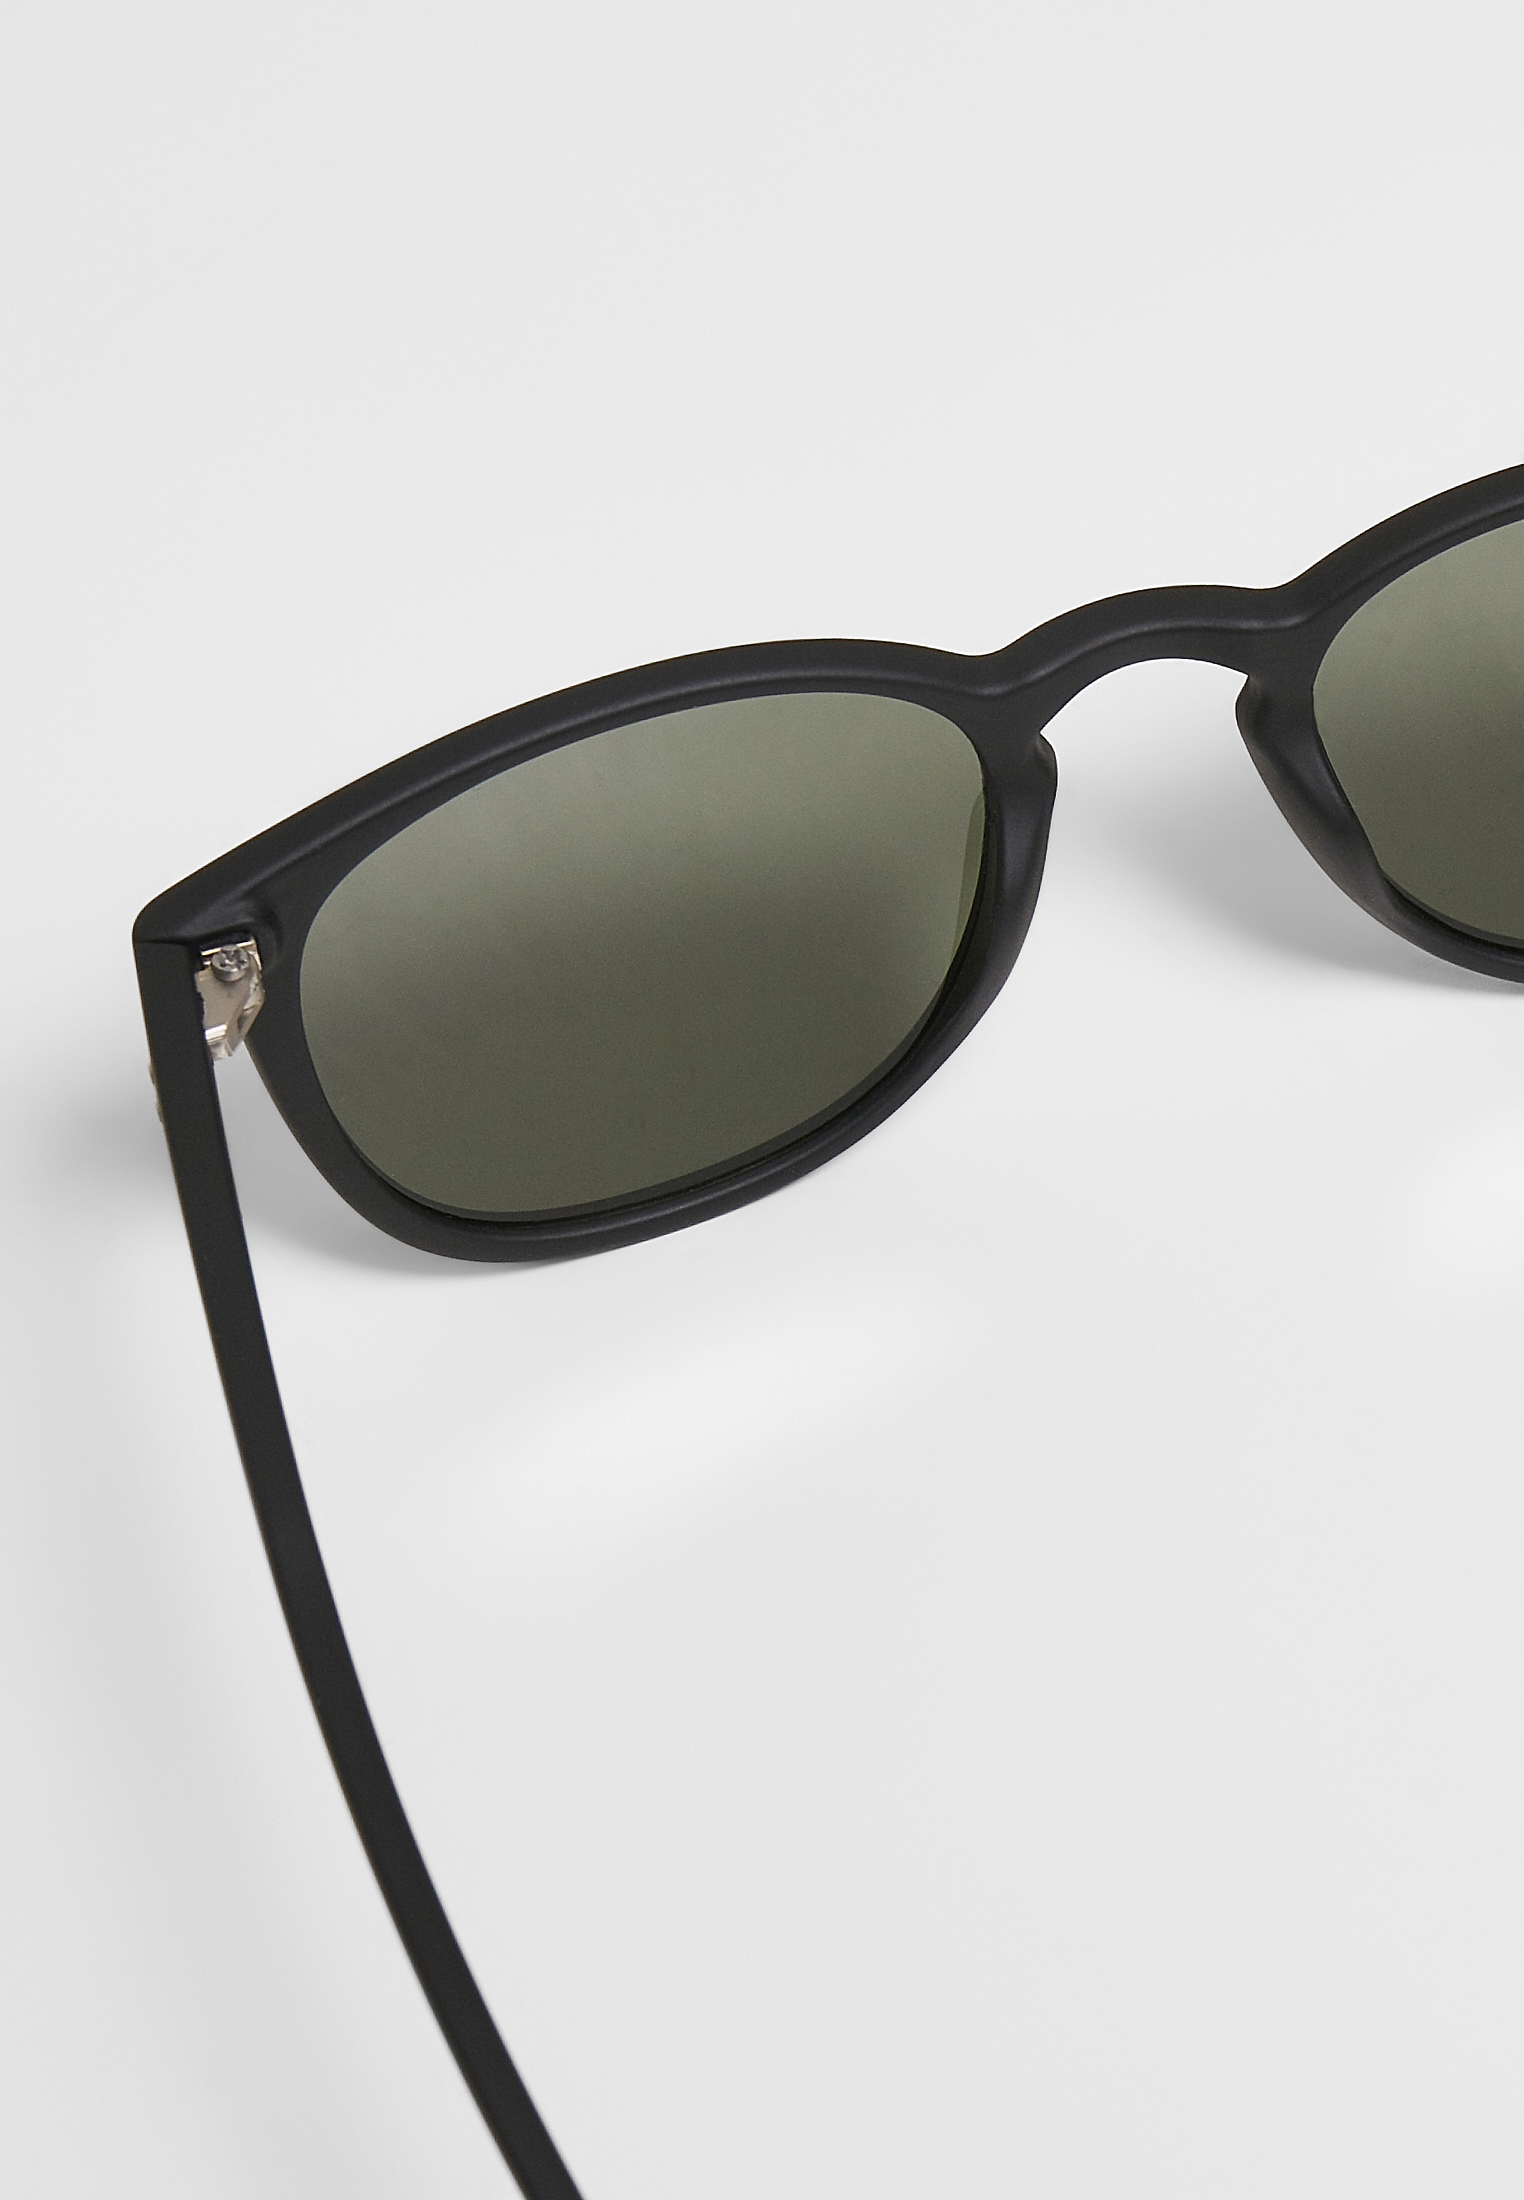 Sonnenbrillen Sunglasses Arthur UC in Farbe black/green